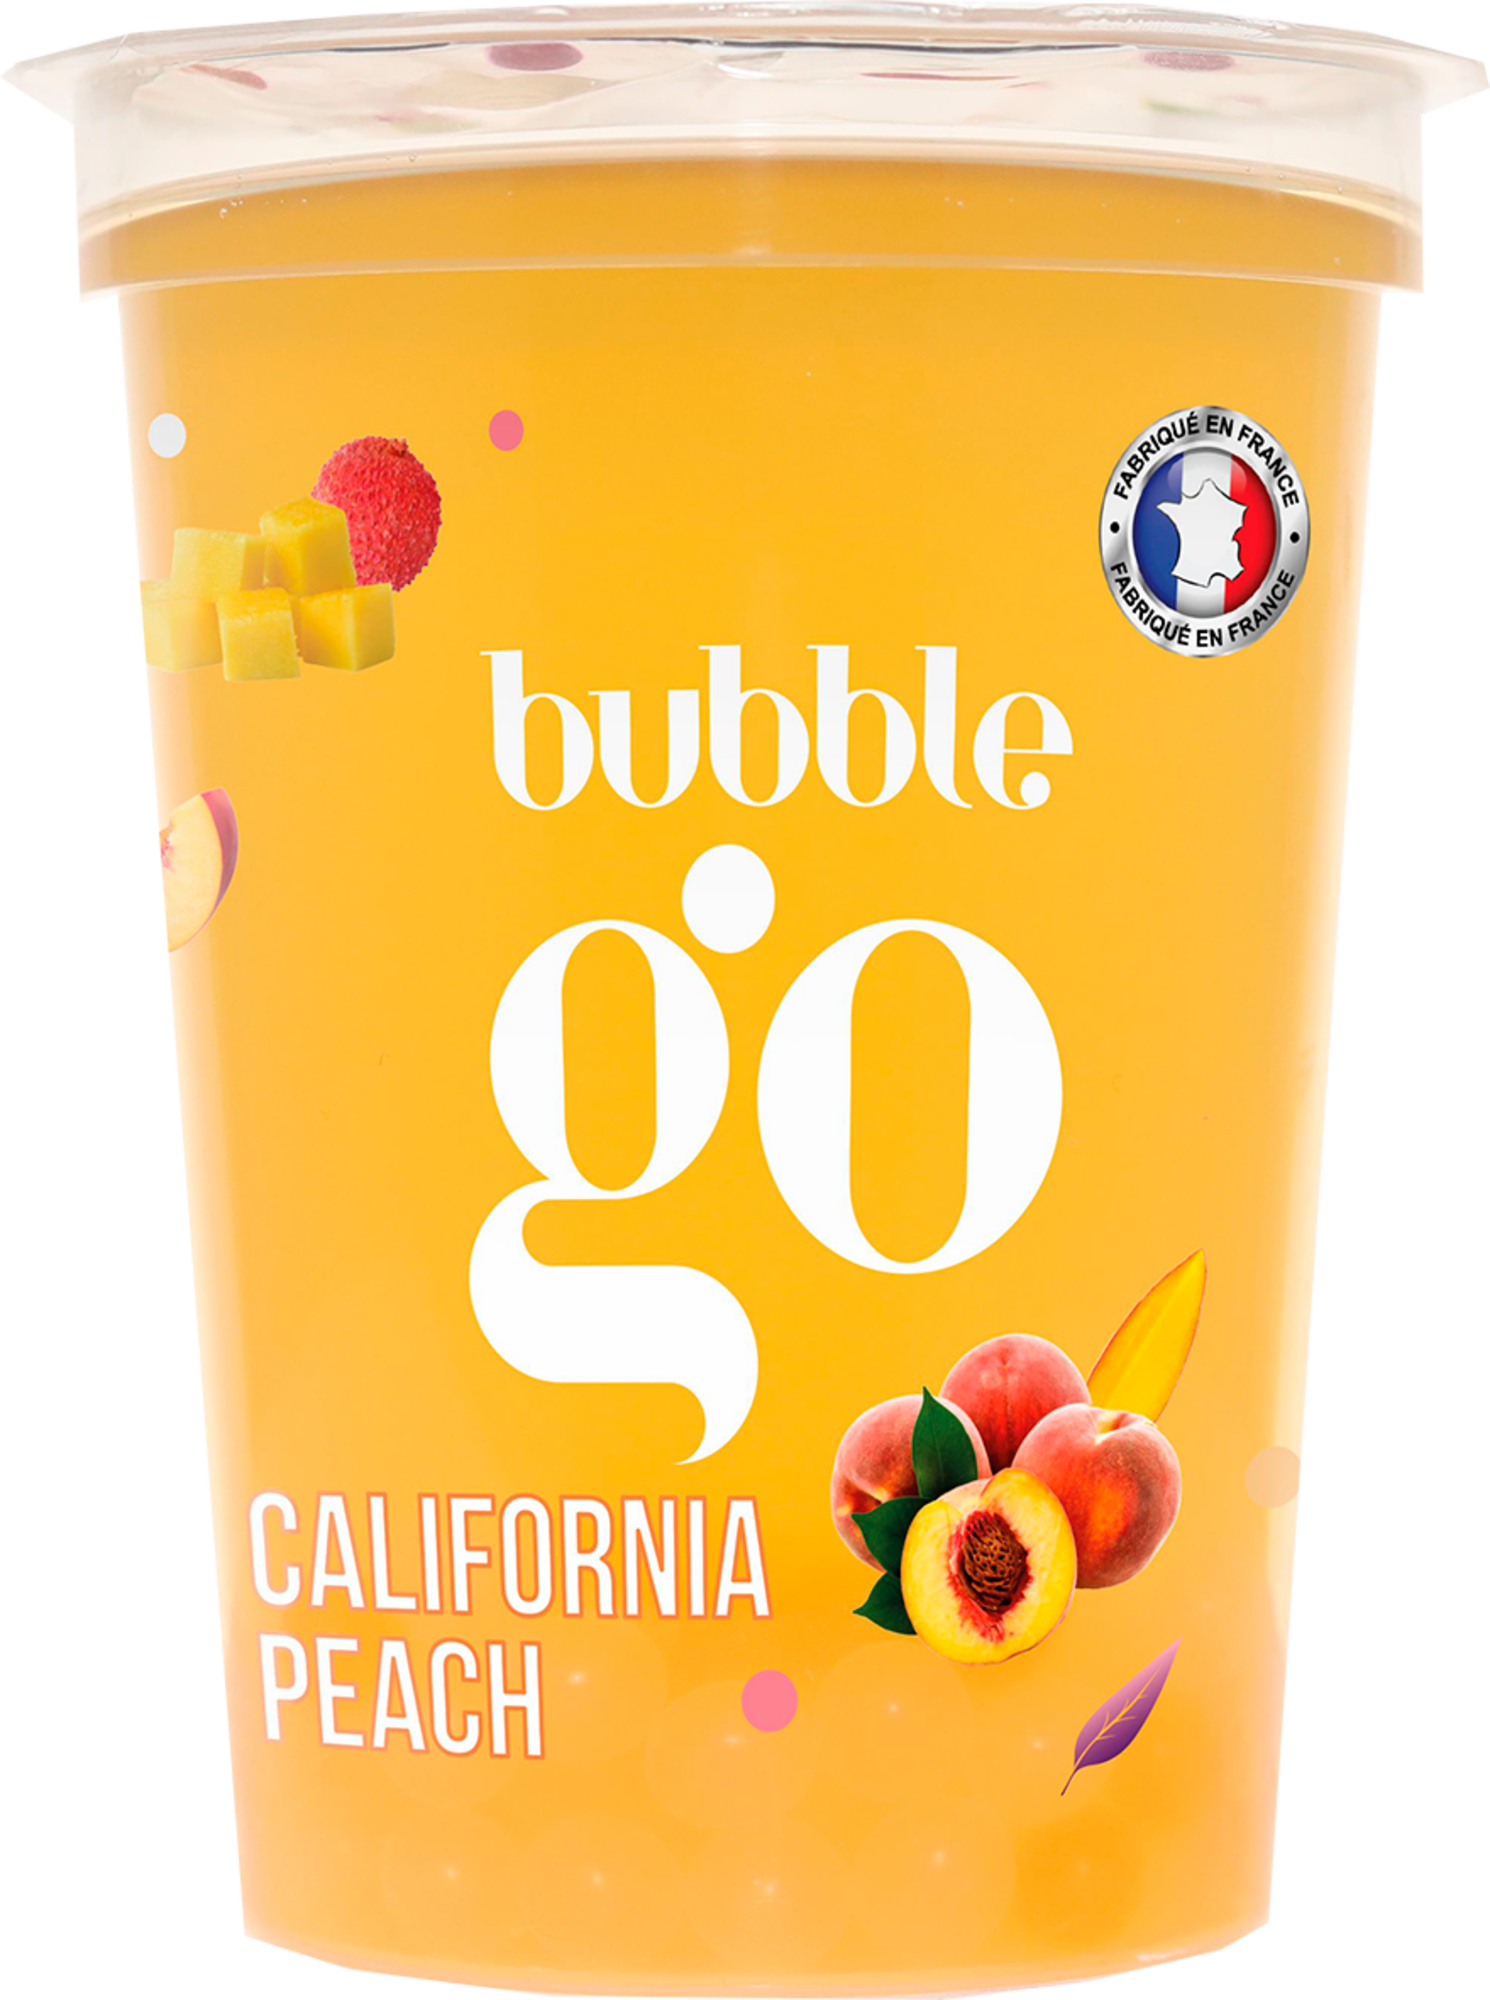 Bubble Tea California Peach
"BUBBLE GO"